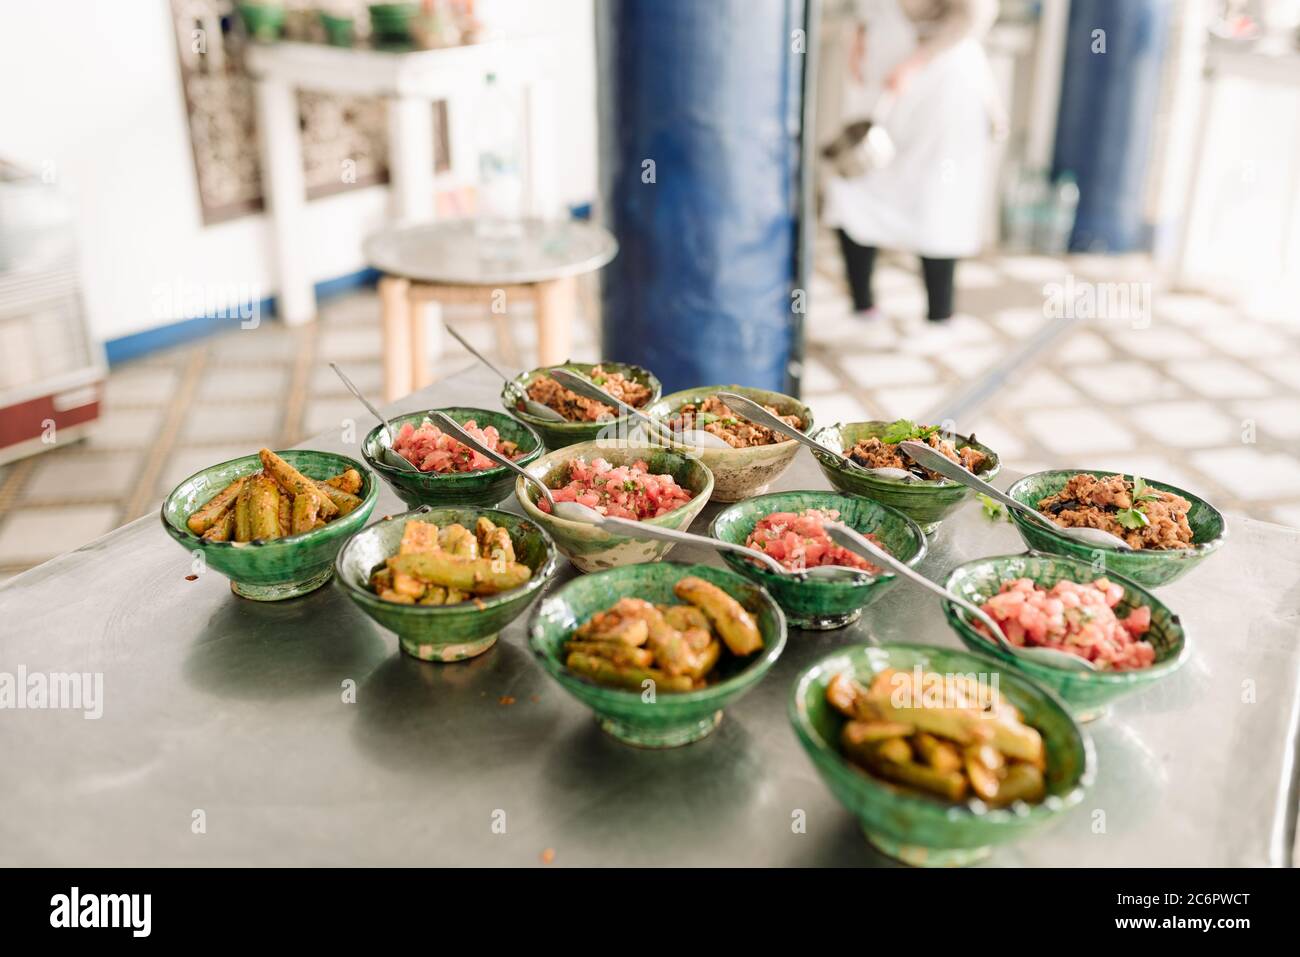 Cucina marocchina in ciotole colorate in un ambiente di cucina